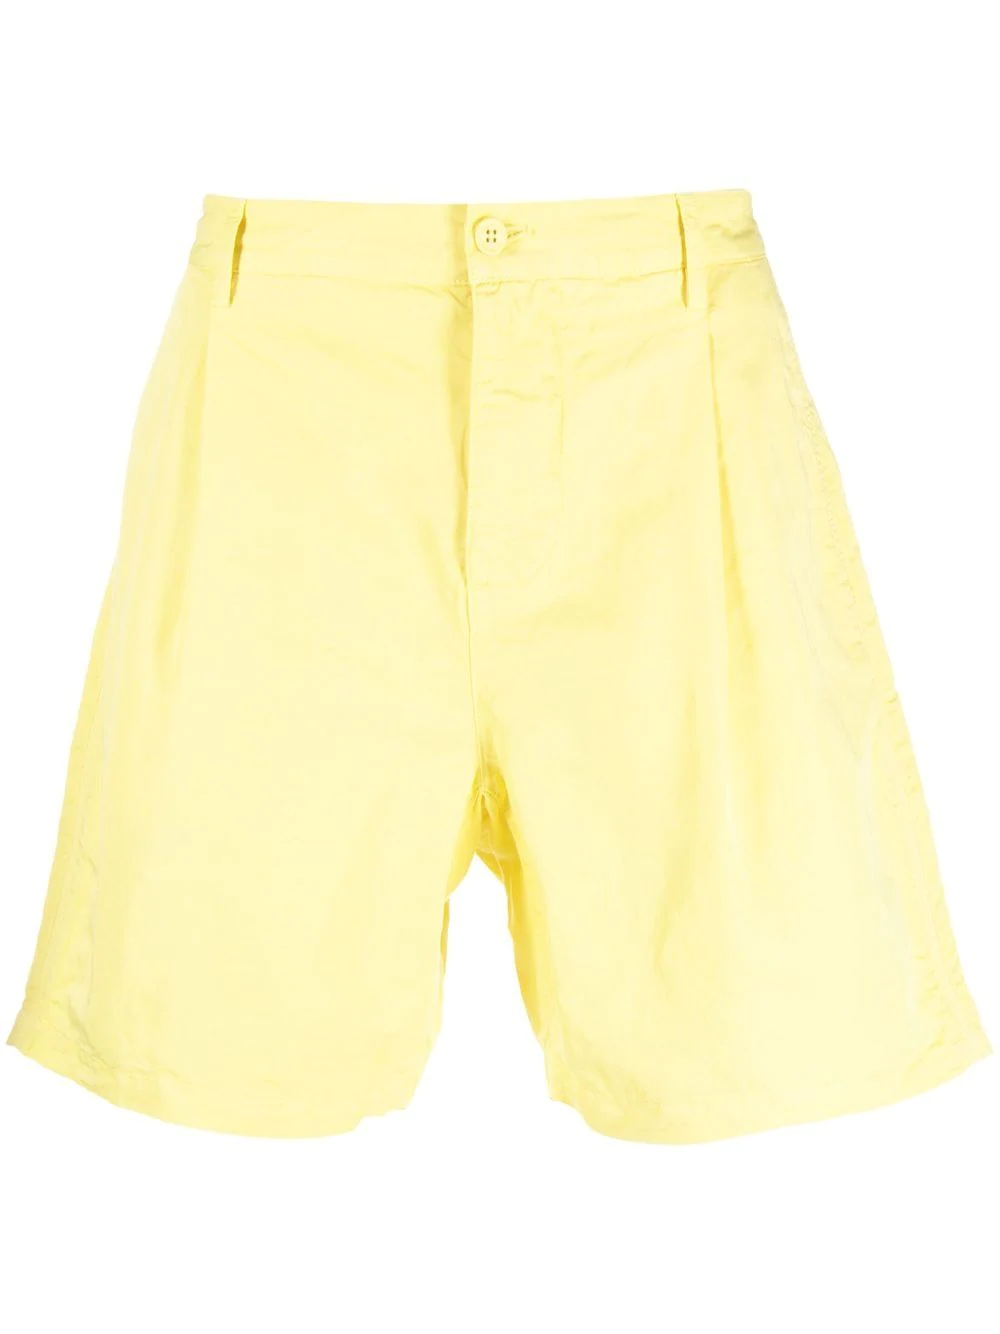 Orlebar Brown Searose bermuda shorts - Yellow